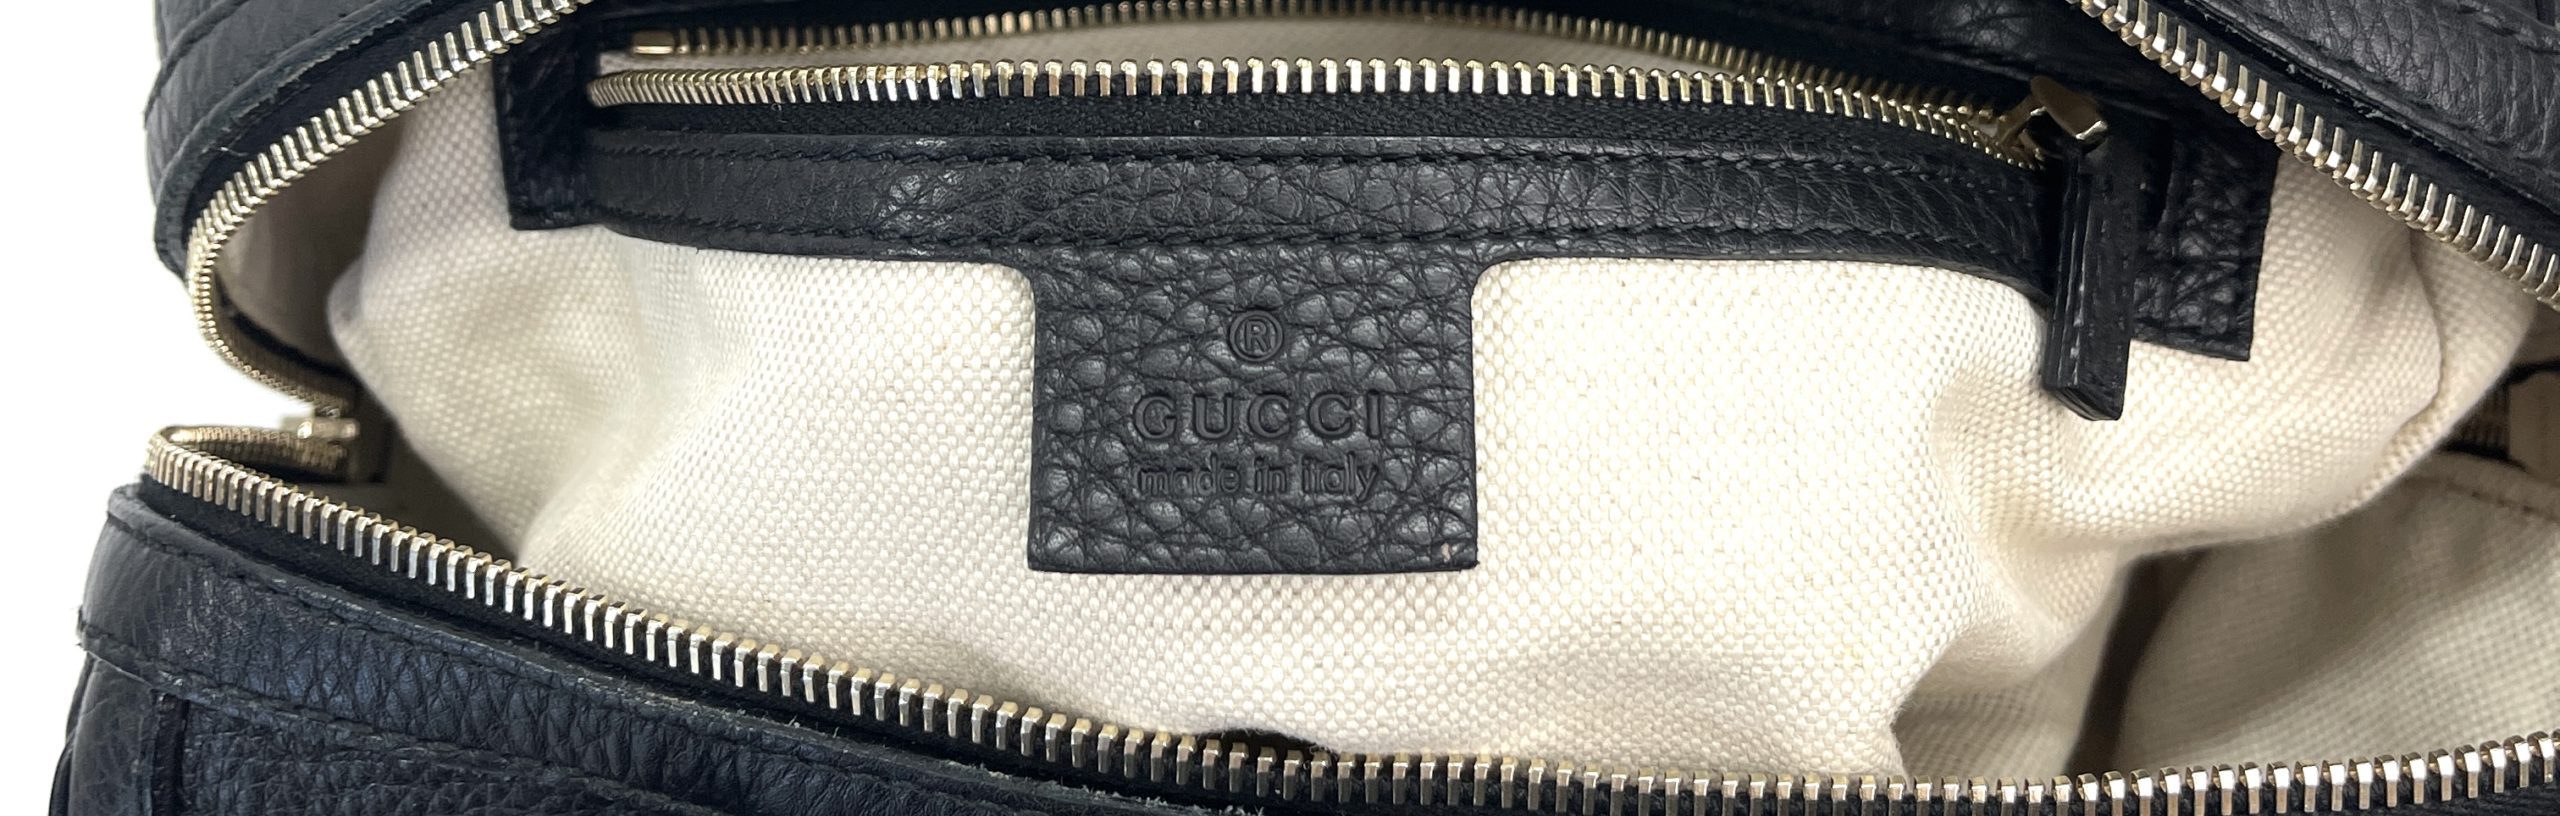 Shop GUCCI Unisex 2WAY Plain Leather Logo Outlet Boston Bags